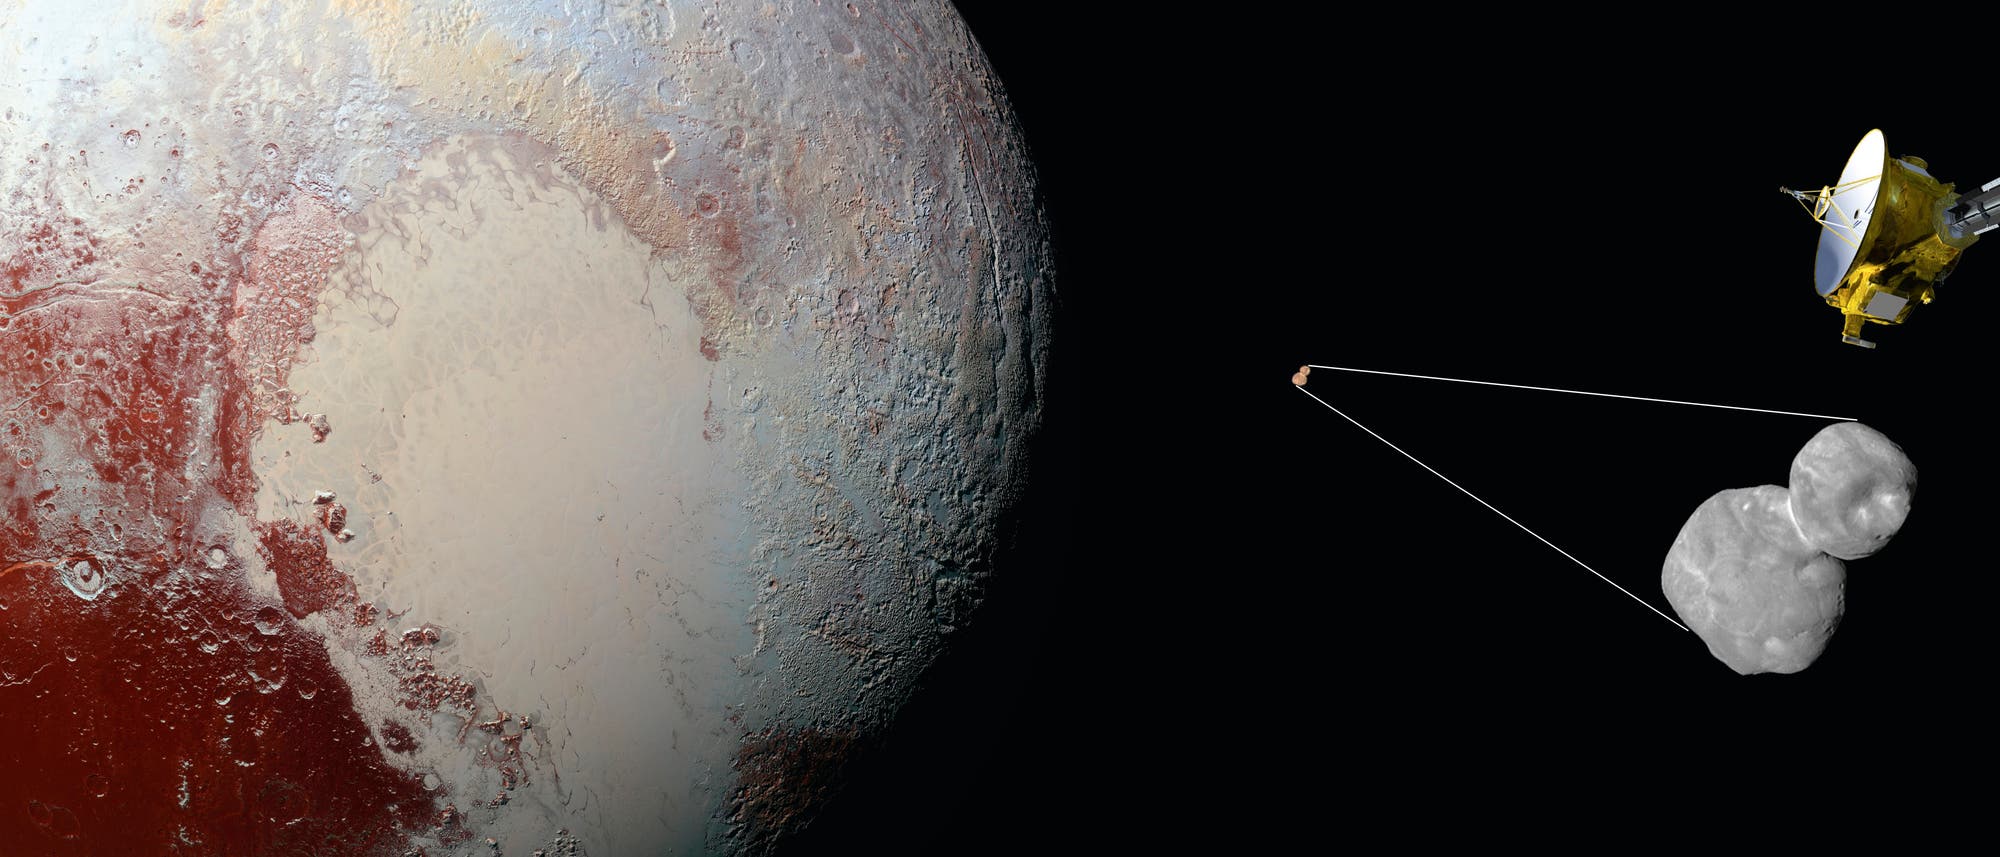 Raumsonde New Horizons und Ultima Thule